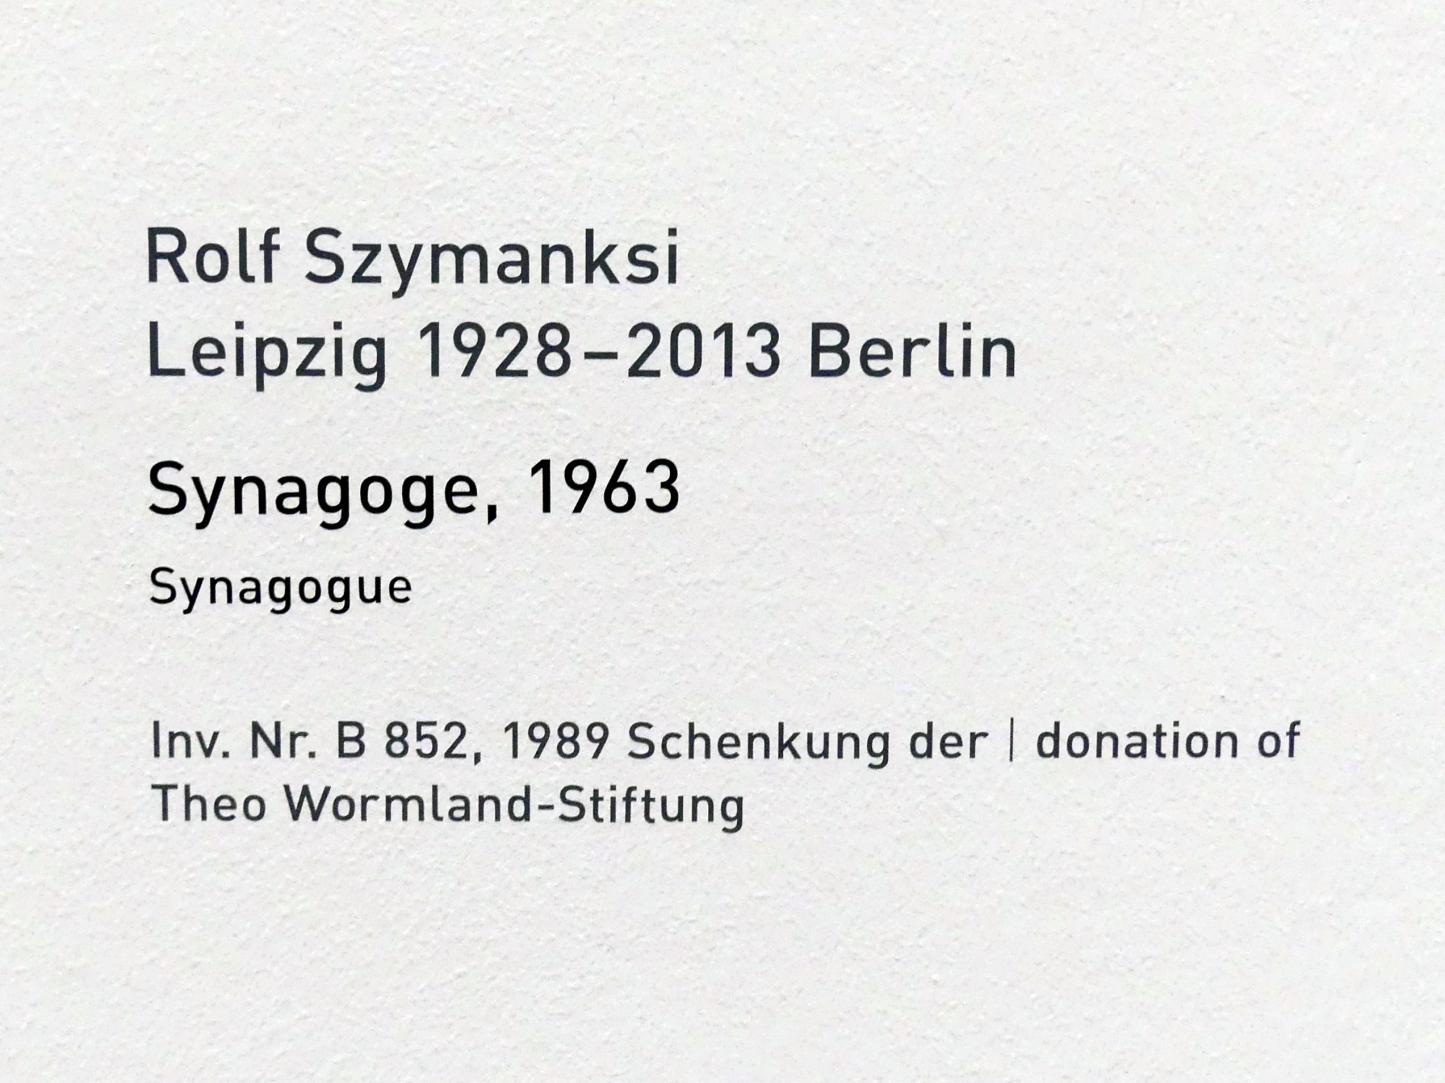 Rolf Szymanski (1963), Synagoge, München, Pinakothek der Moderne, Saal 15, 1963, Bild 7/7